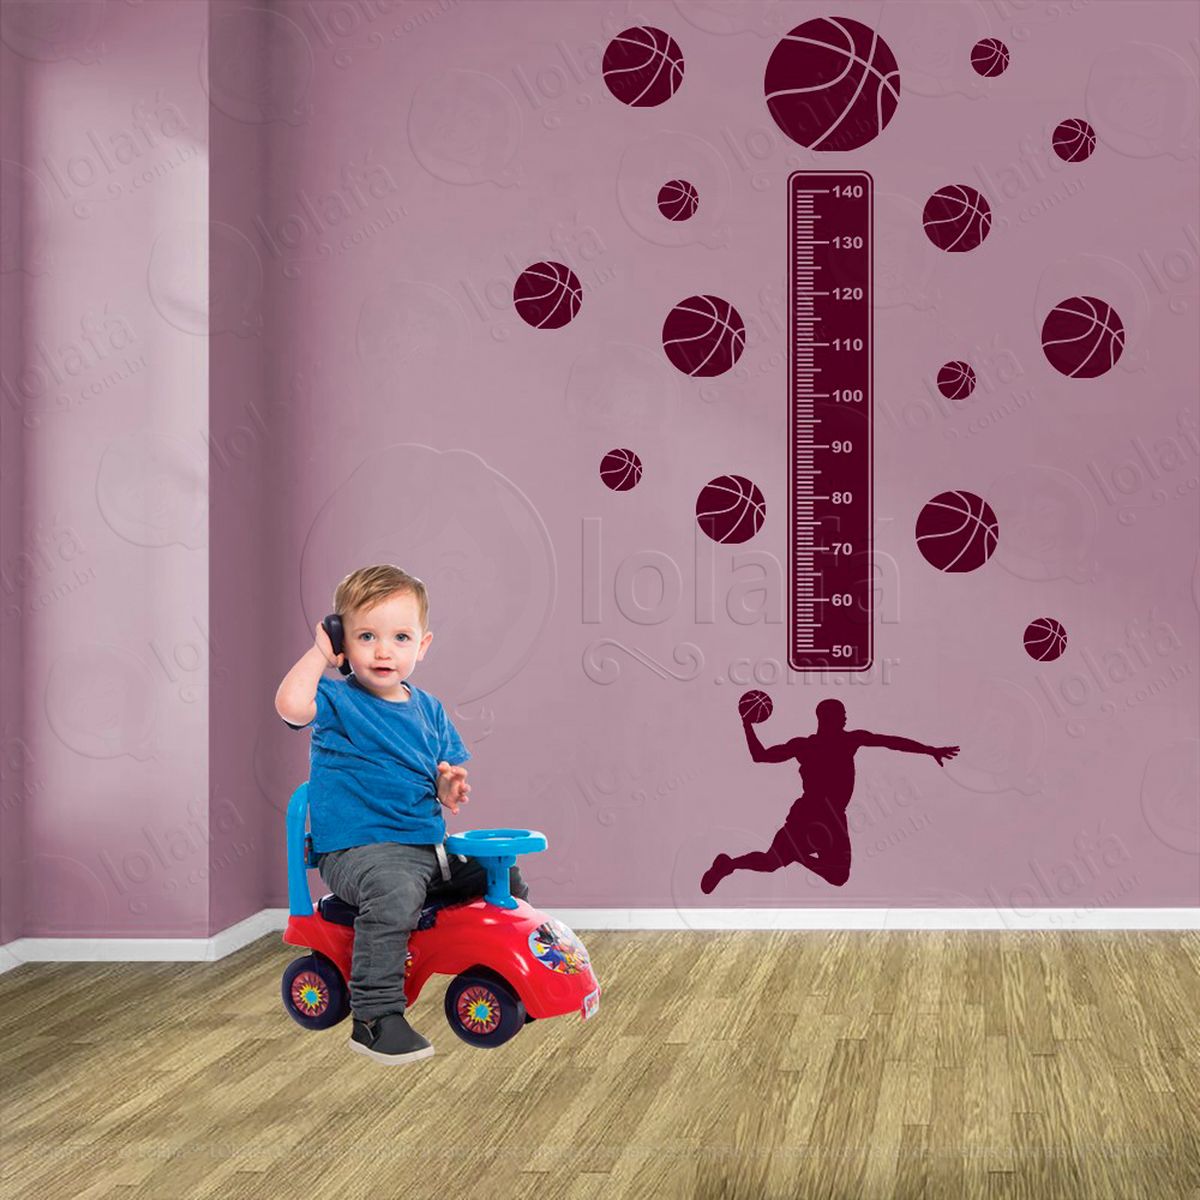 basquetebol e bolas de basquete adesivo régua de crescimento infantil, medidor de altura para quarto, porta e parede - mod:287